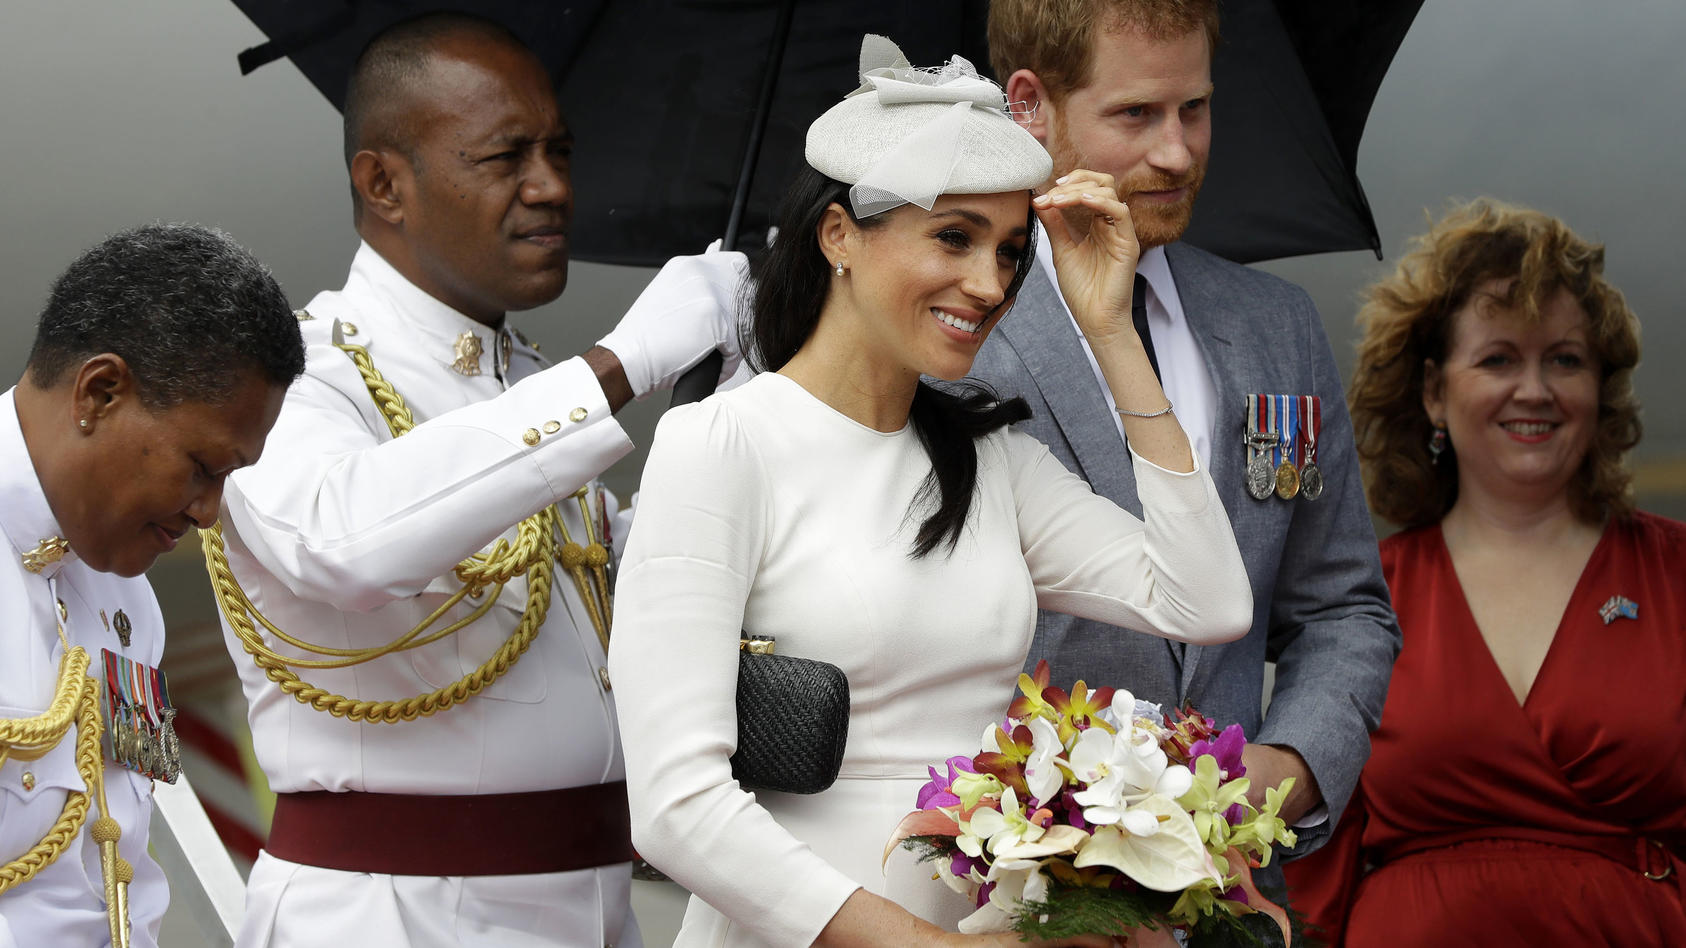 23.10.2018, Fidschi, Suva: Der britische Prinz Harry, Herzog von Sussex, und seine Frau Meghan (M), Herzogin von Sussex, nach ihrer Ankunft aus dem Flughafen. Foto: Kirsty Wigglesworth/Press Association/dpa +++ dpa-Bildfunk +++